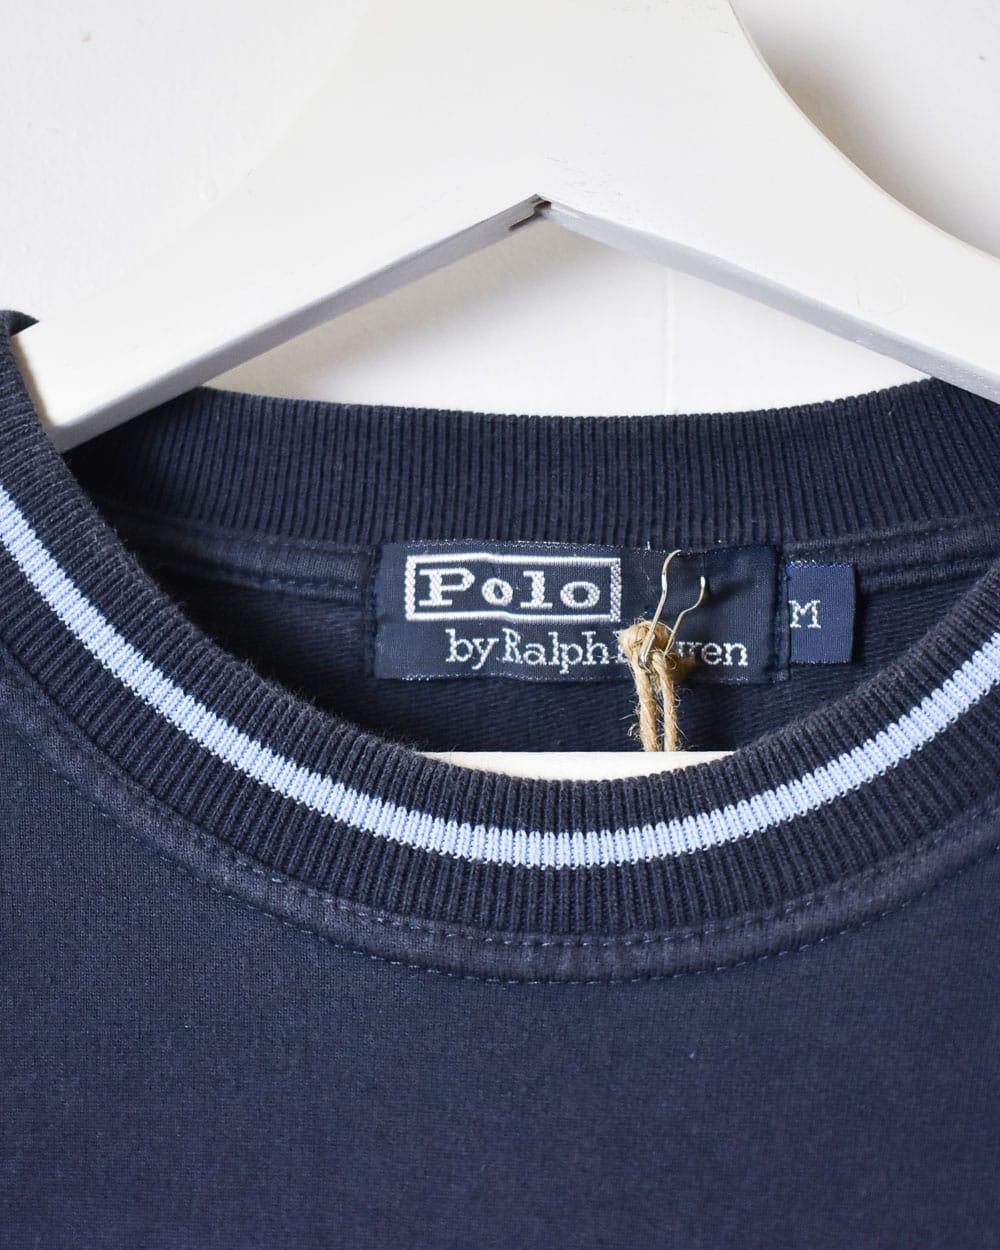 Navy Polo Ralph Lauren Long Sleeved T-Shirt - Medium